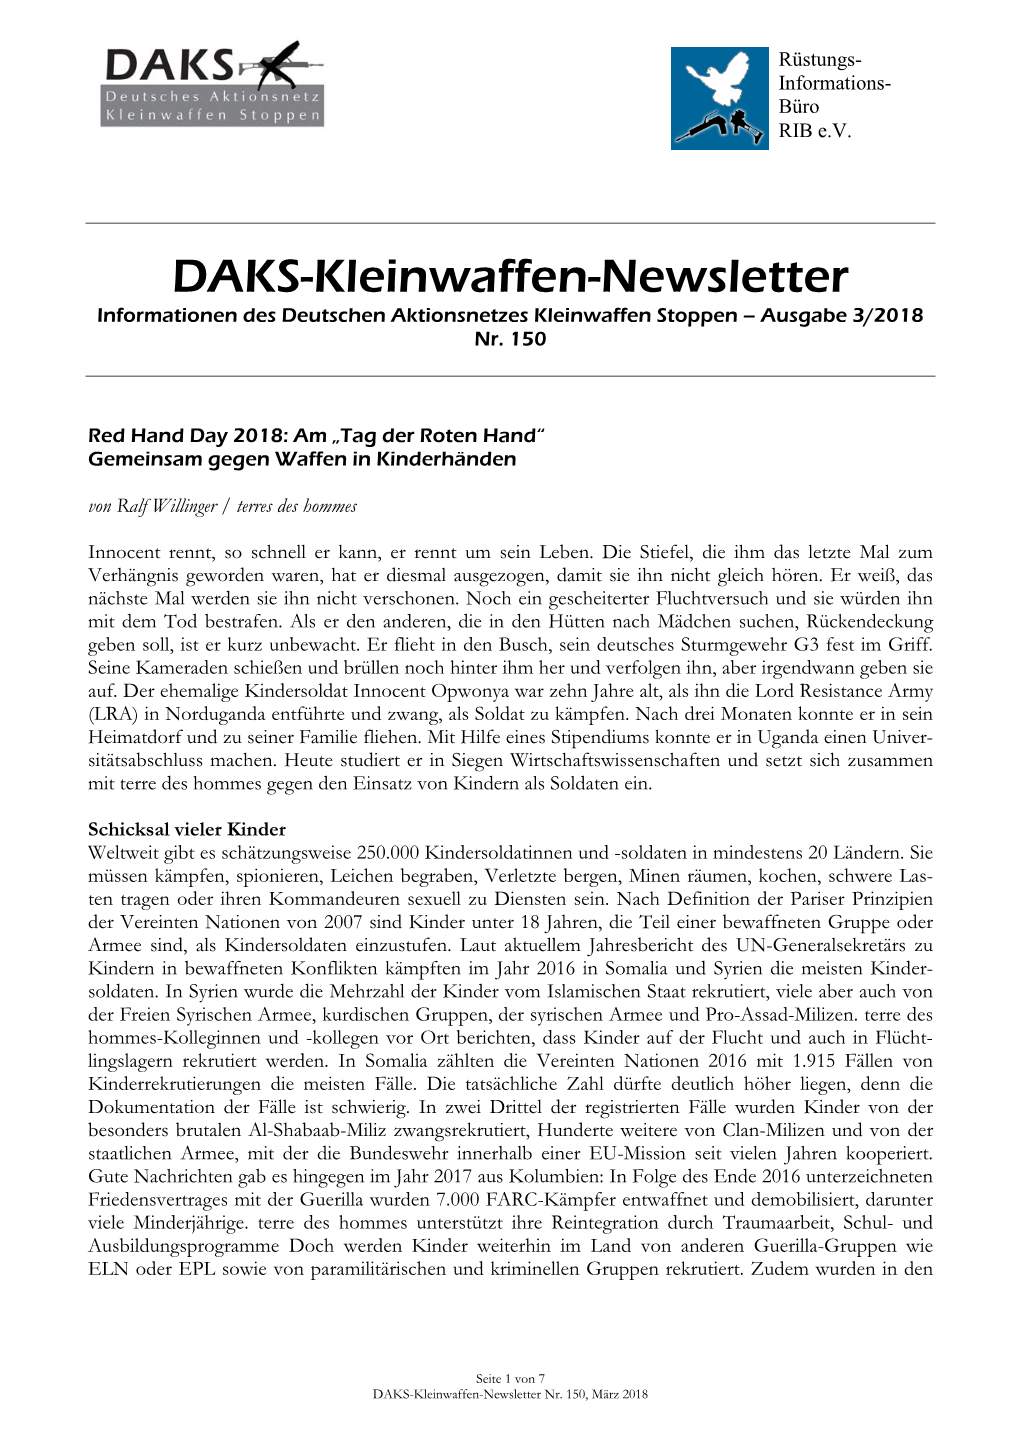 DAKS-Kleinwaffen-Newsletter Informationen Des Deutschen Aktionsnetzes Kleinwaffen Stoppen – Ausgabe 3/2018 Nr